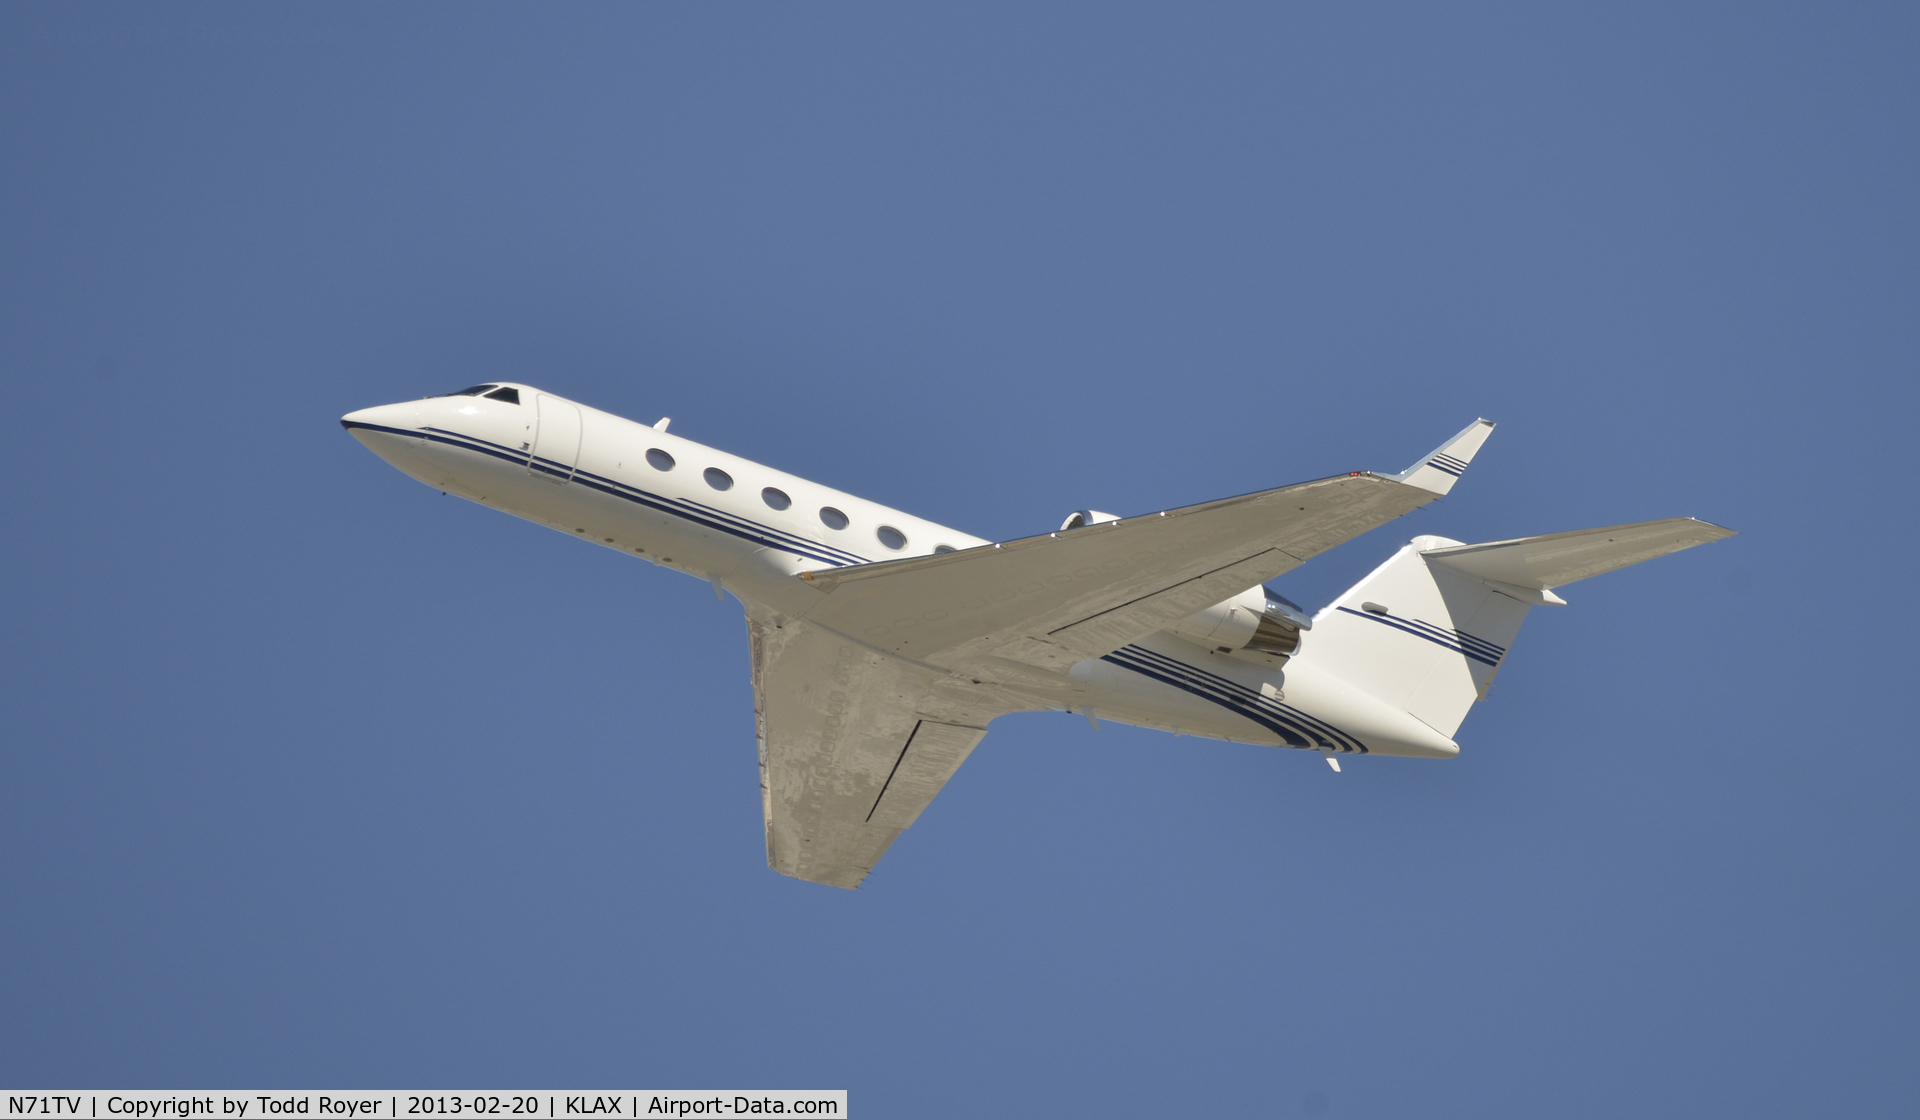 N71TV, 2000 Gulfstream Aerospace G-IV C/N 1430, Departing LAX